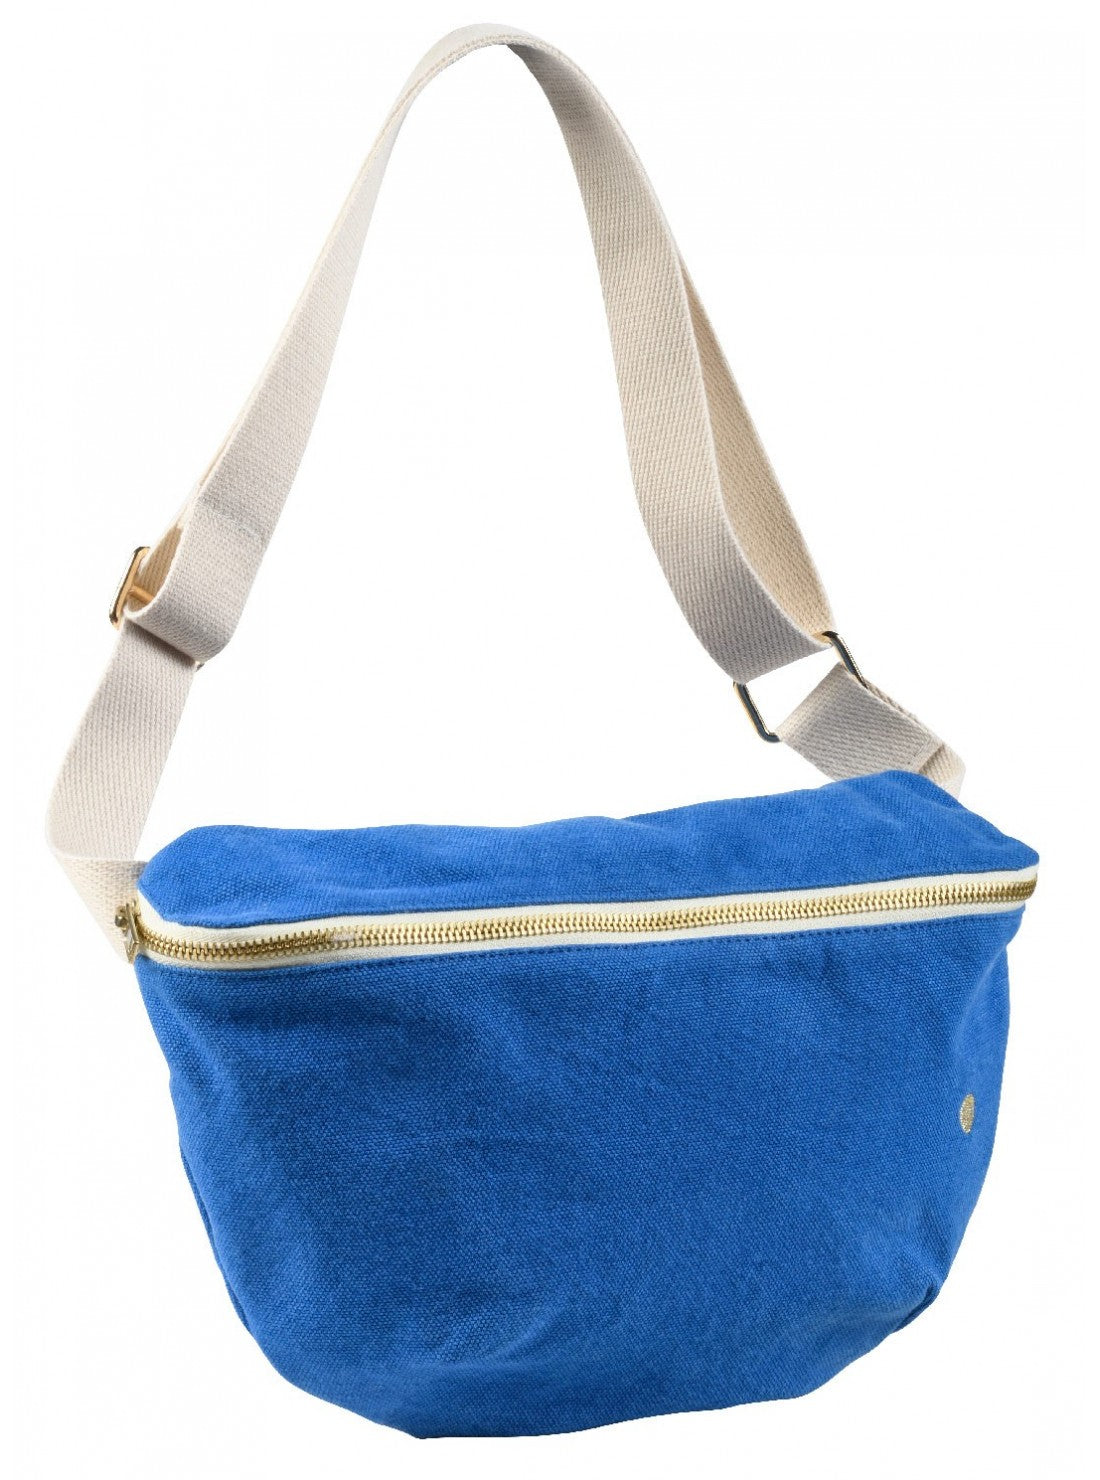 
                  
                    IONA Bleu Mecano Bum Bag
                  
                